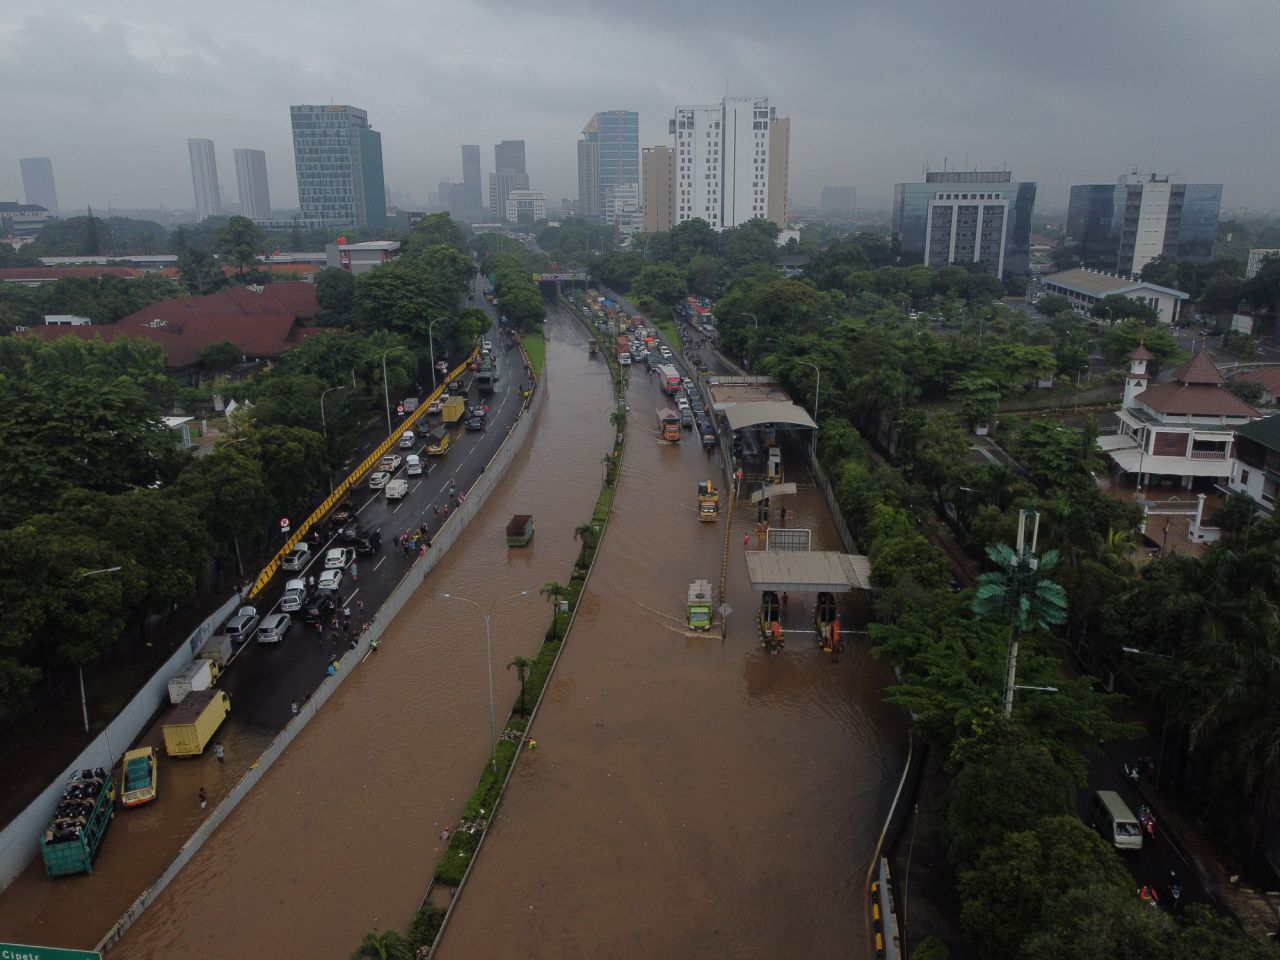 Regelmäßig stehen größere Teile von Jakarta unter Wasser.